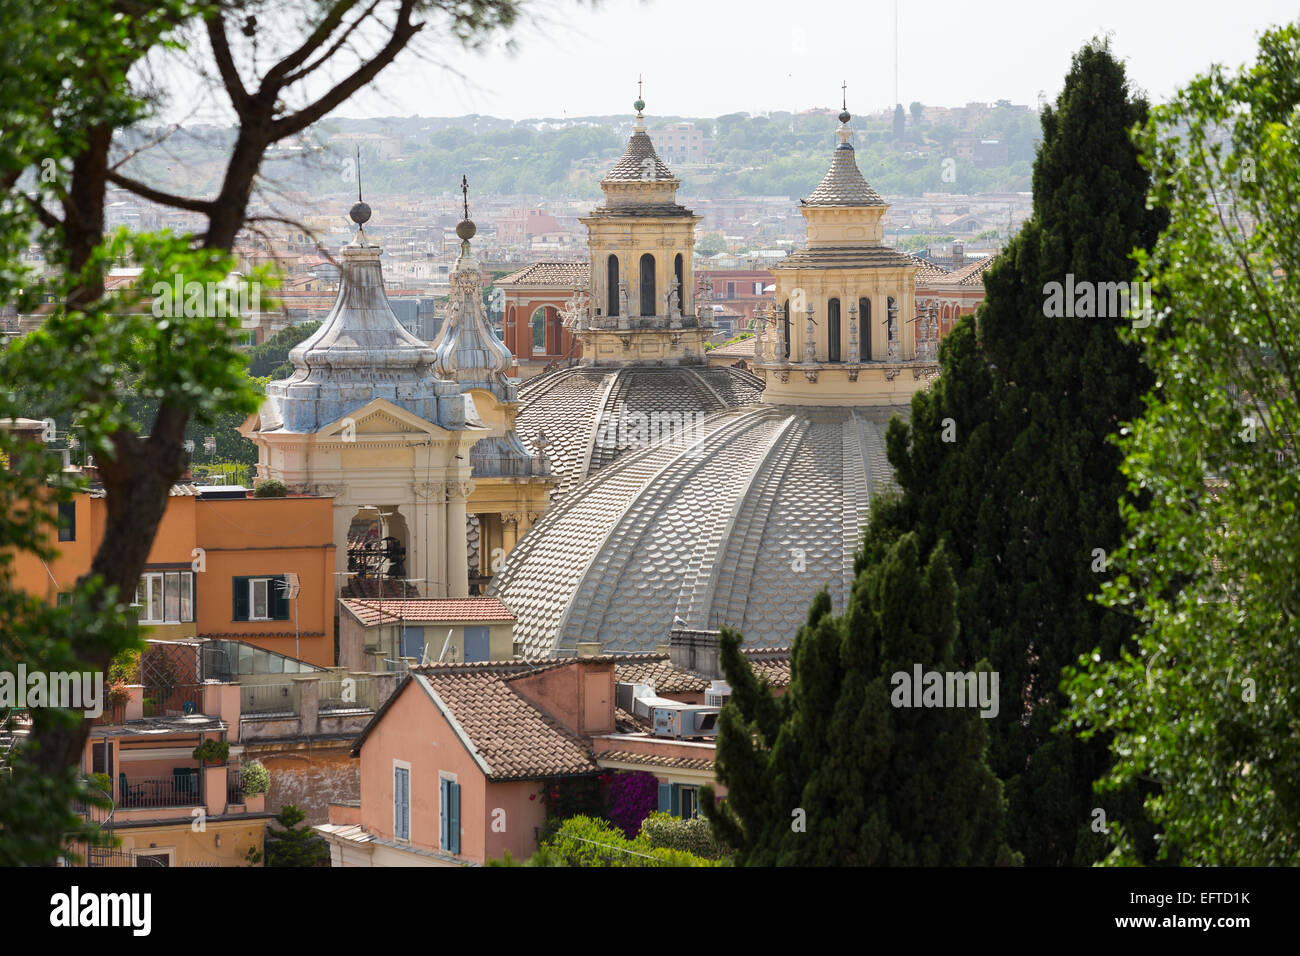 Les deux églises et les toits de Rome vu du parc du pincio à Rome, Italie Banque D'Images